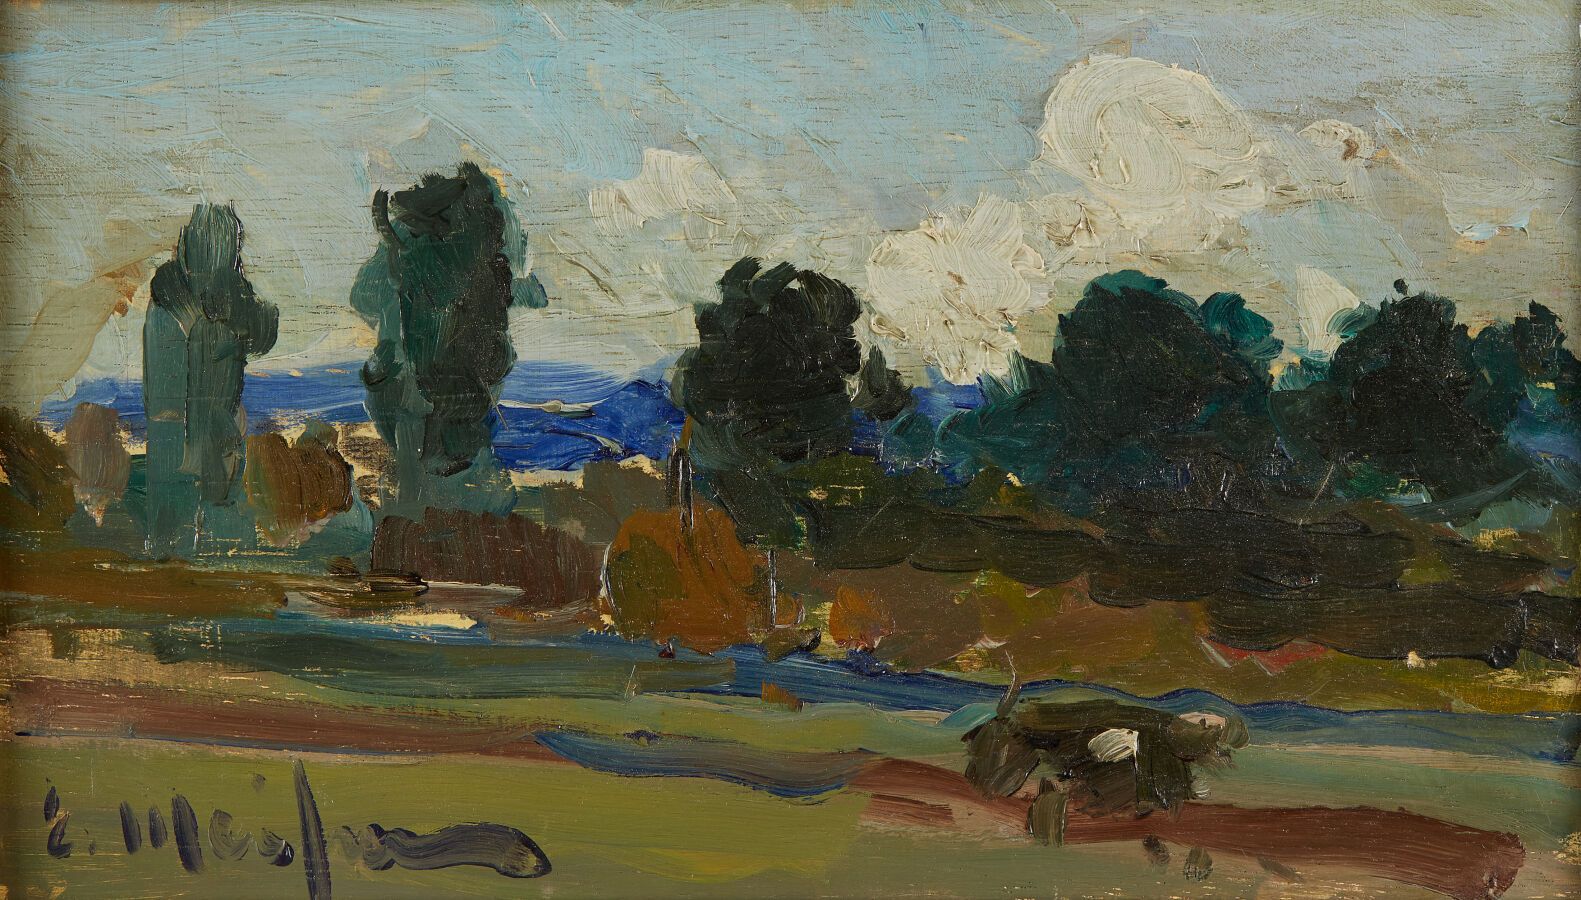 Null 迈弗伦-埃利塞奥 (1857-1940)
风景
面板油画，左下角有签名
高14.5；宽24.5厘米